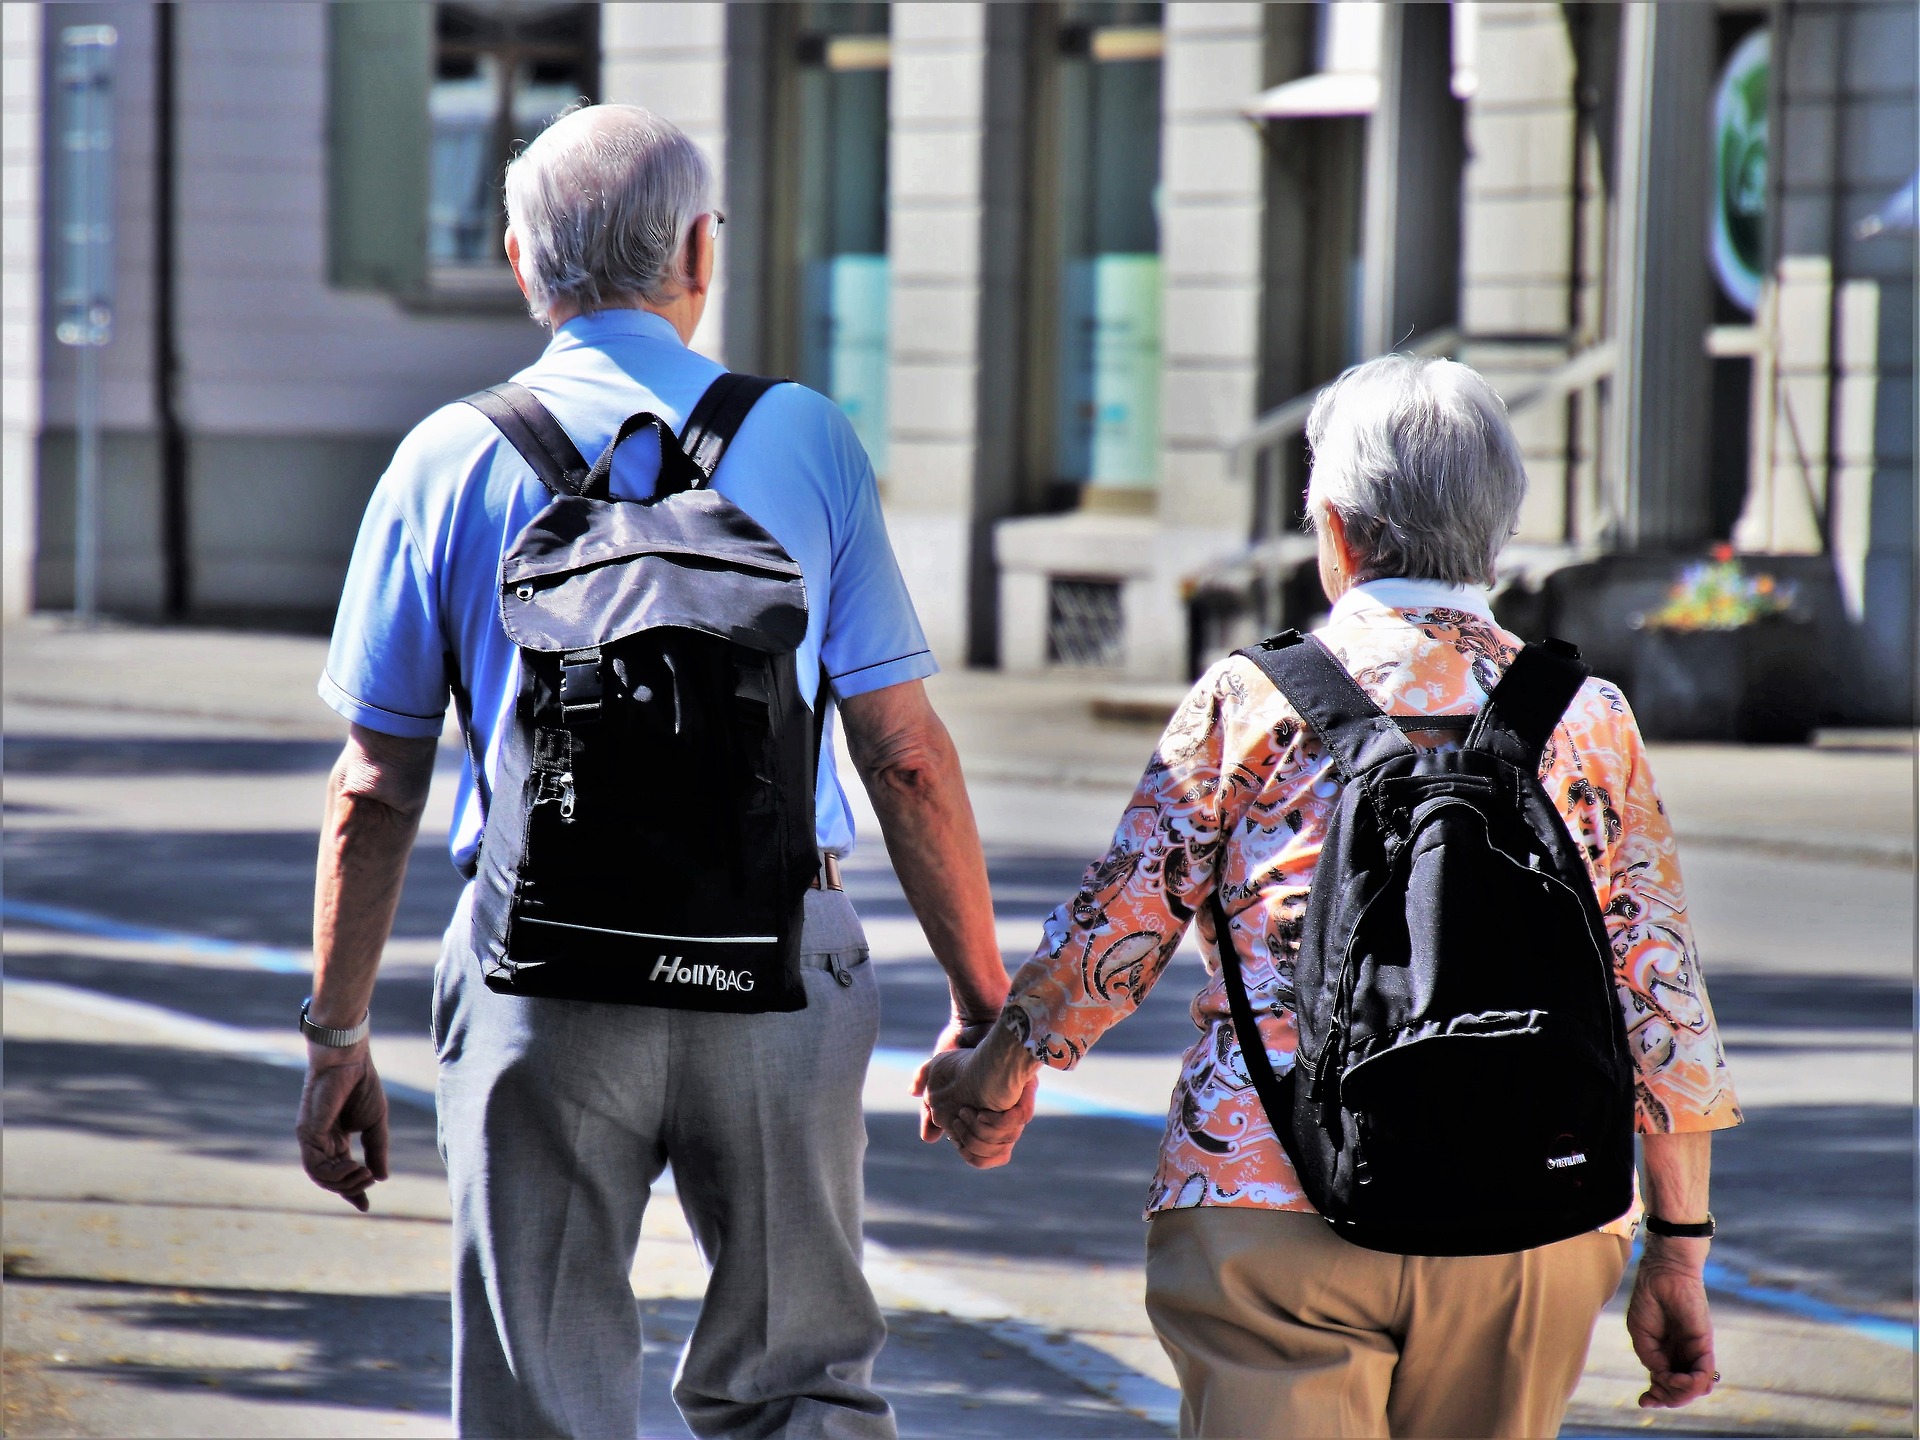 Personas de la tercera edad caminan por las calles de una ciudad. (Foto: Pixabay)